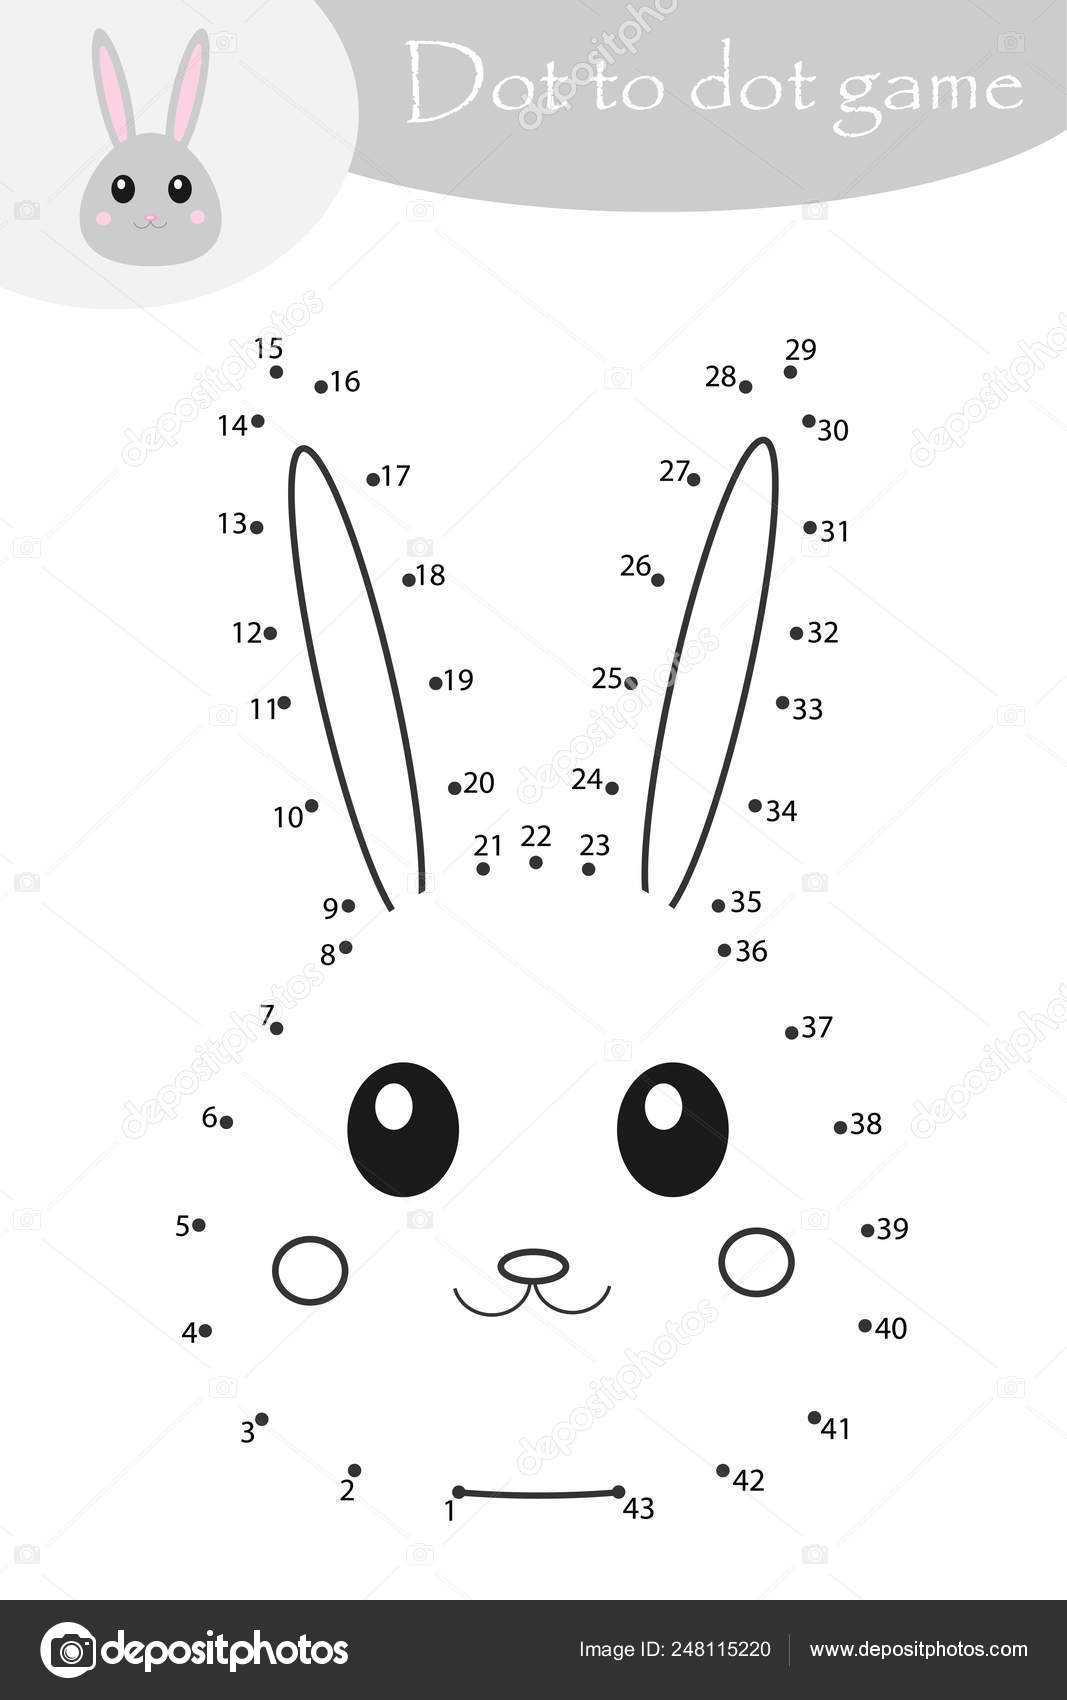 imprimir livro de colorir de coelho de desenho animado bonito para  crianças. colorir por números é